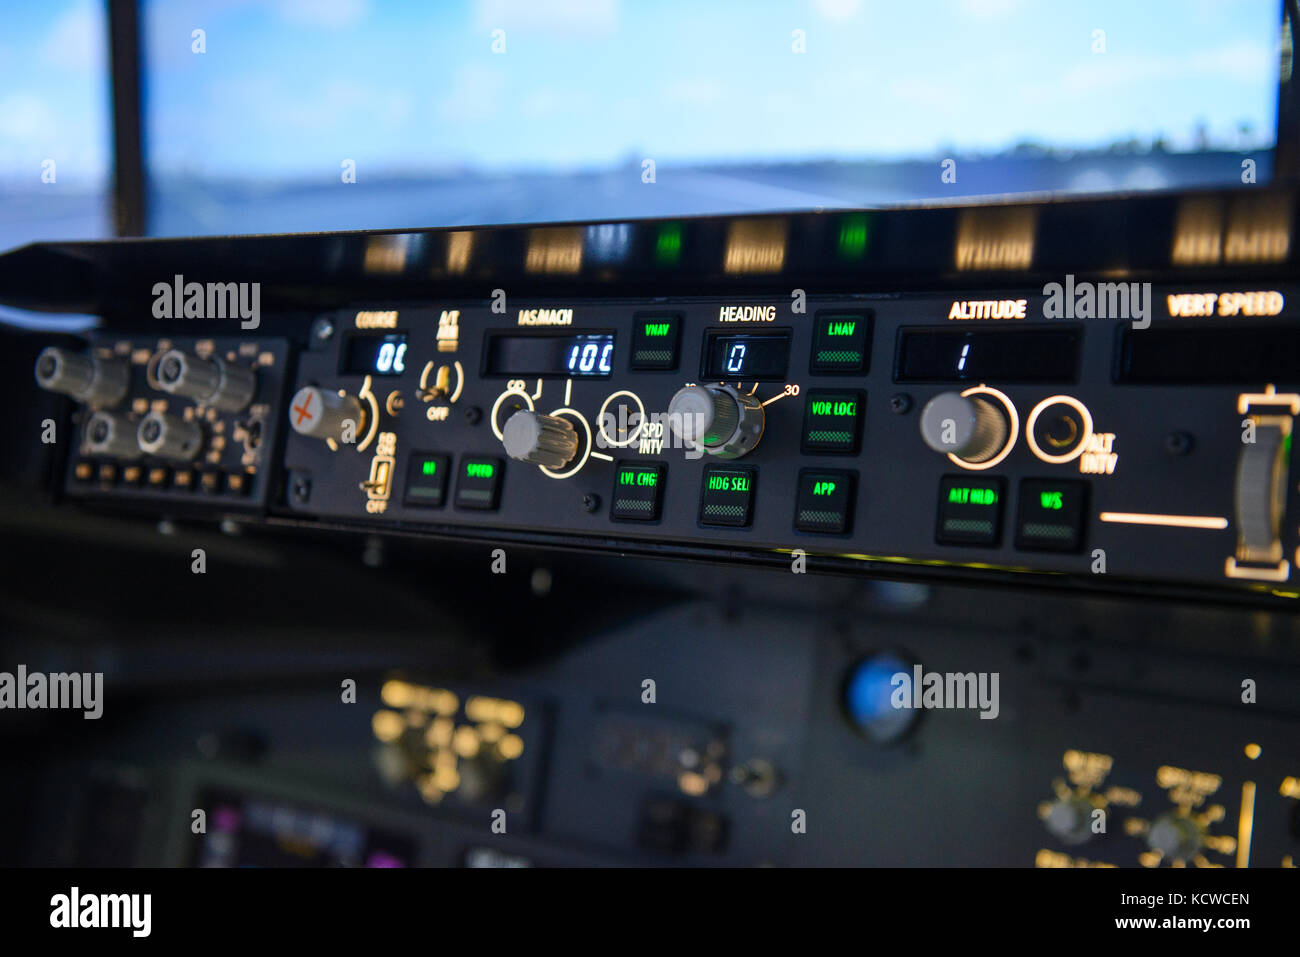 Aircraft autopilot heading controls panel display Stock Photo